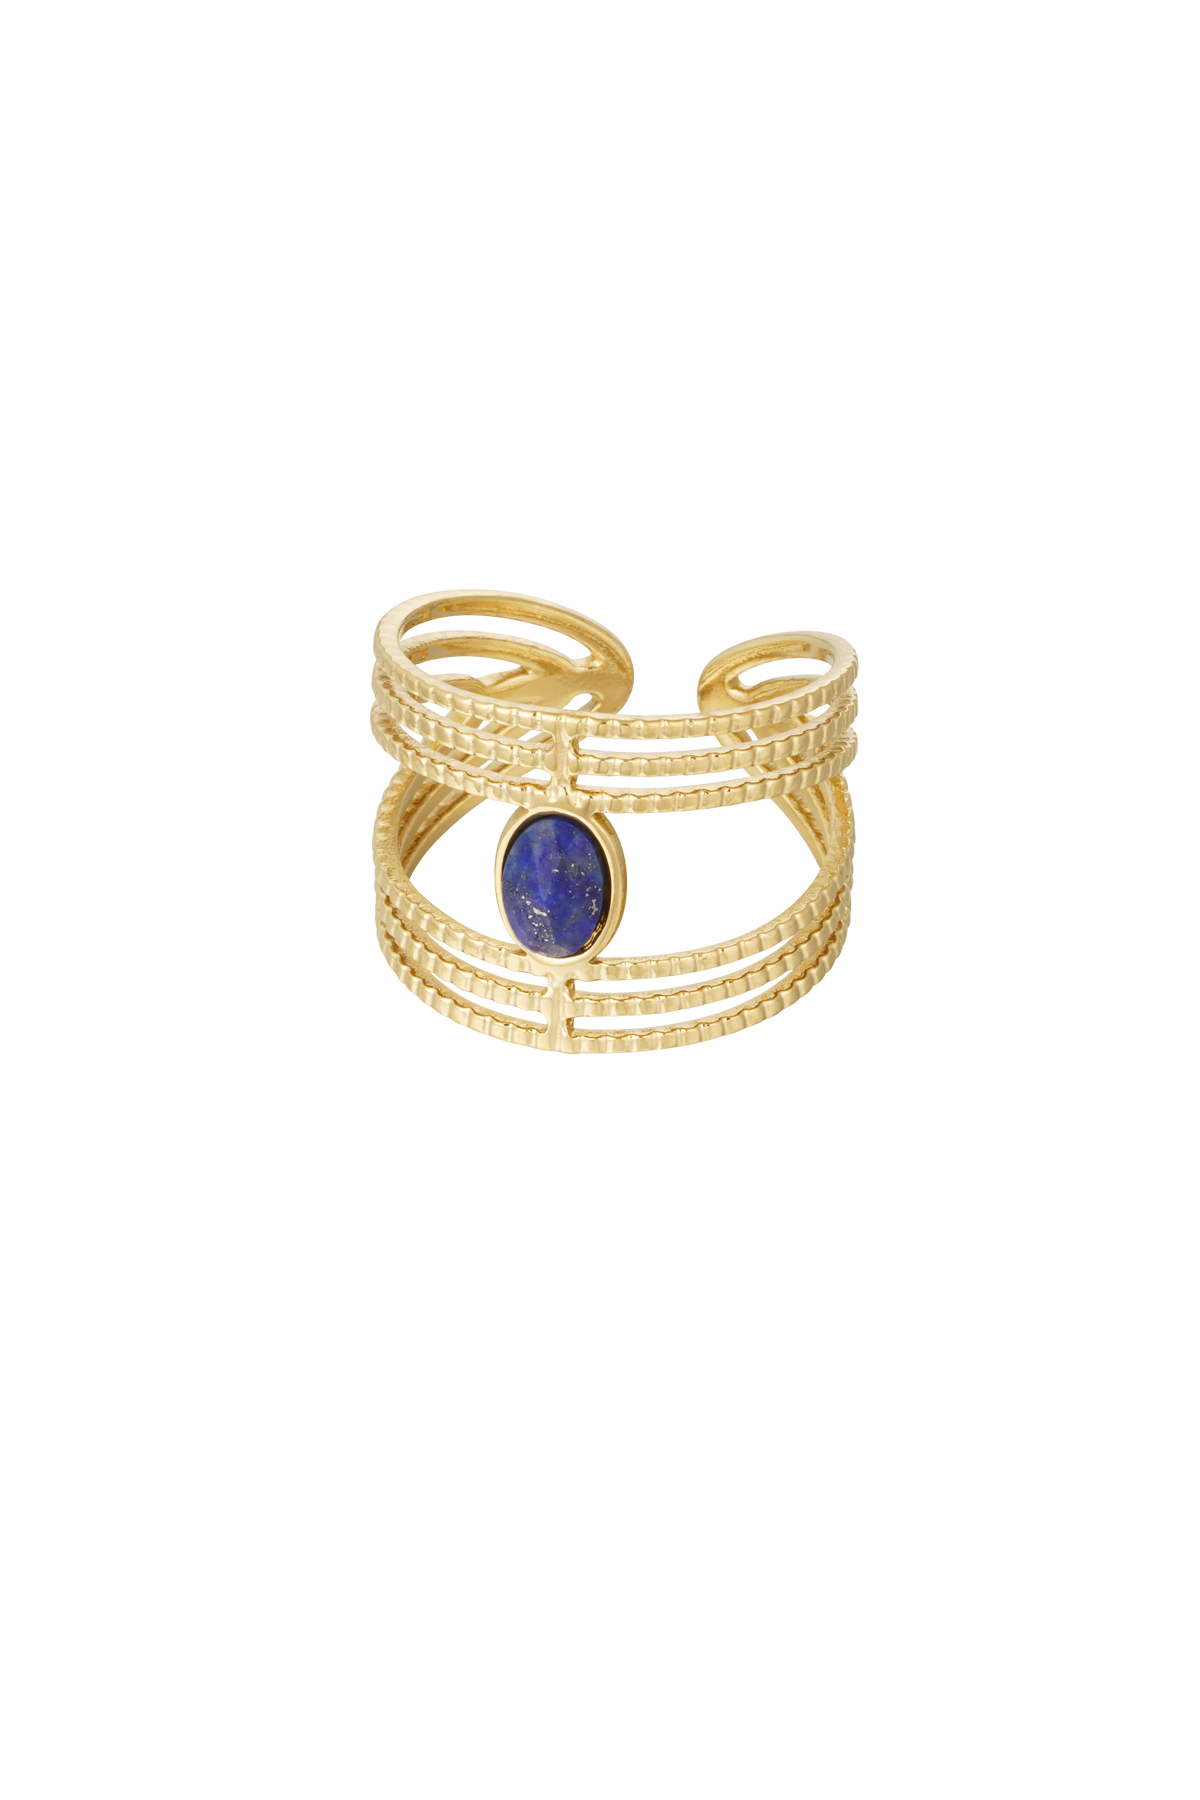 Statement sierlijke ring met steen - goud/blauw